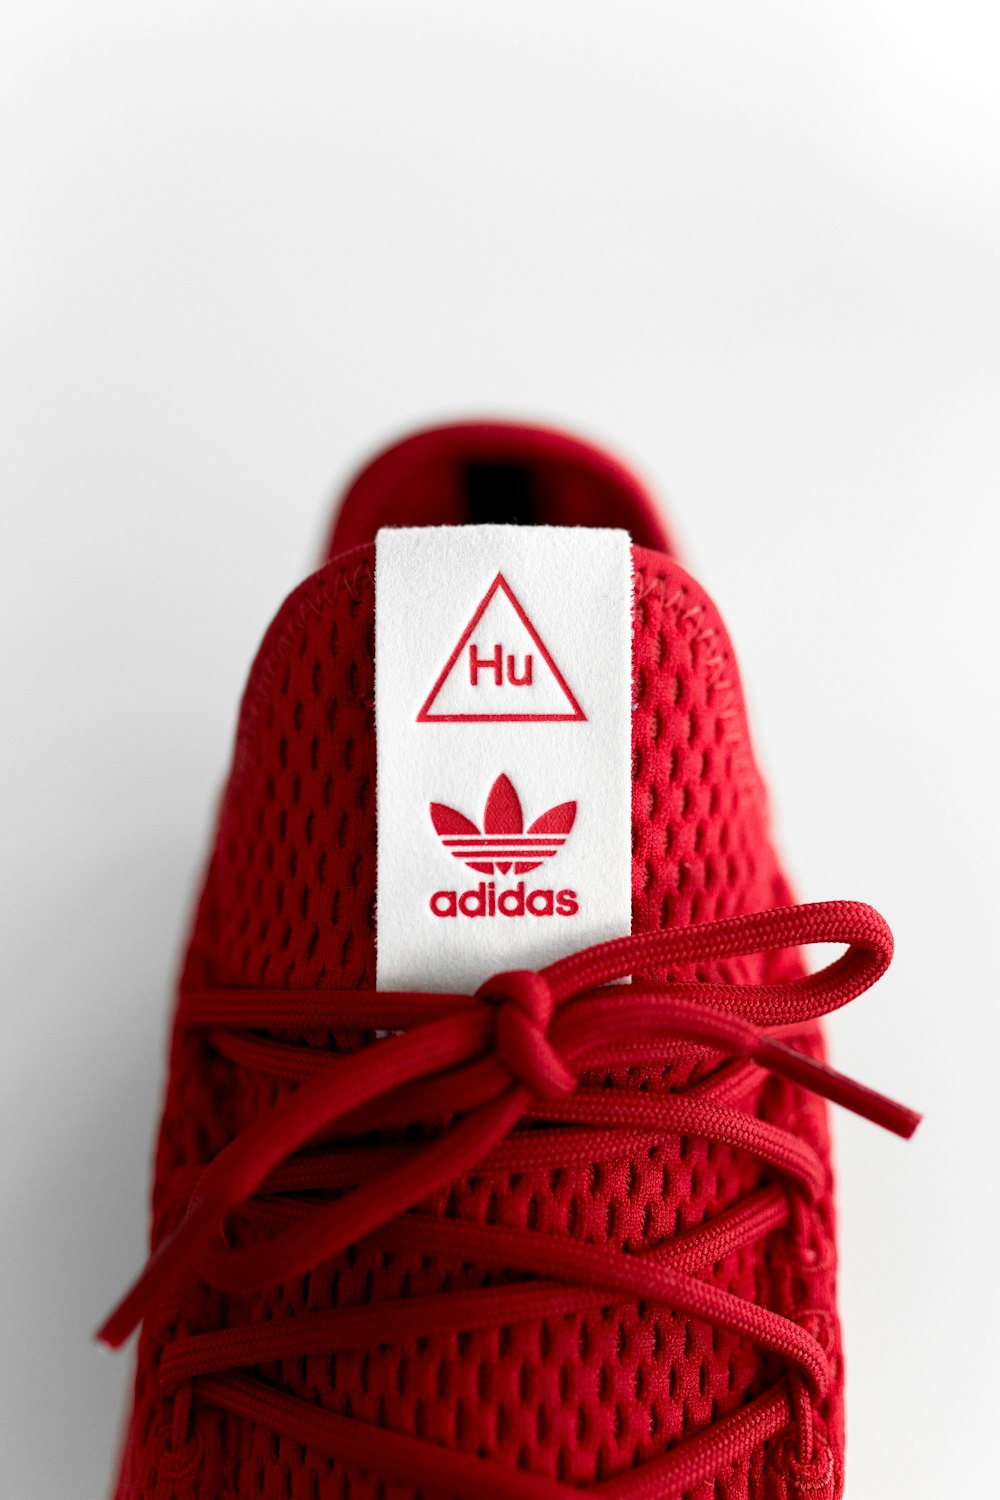 Foto Zapatillas adidas rojas sin emparejar – Imagen Moda gratis en Unsplash